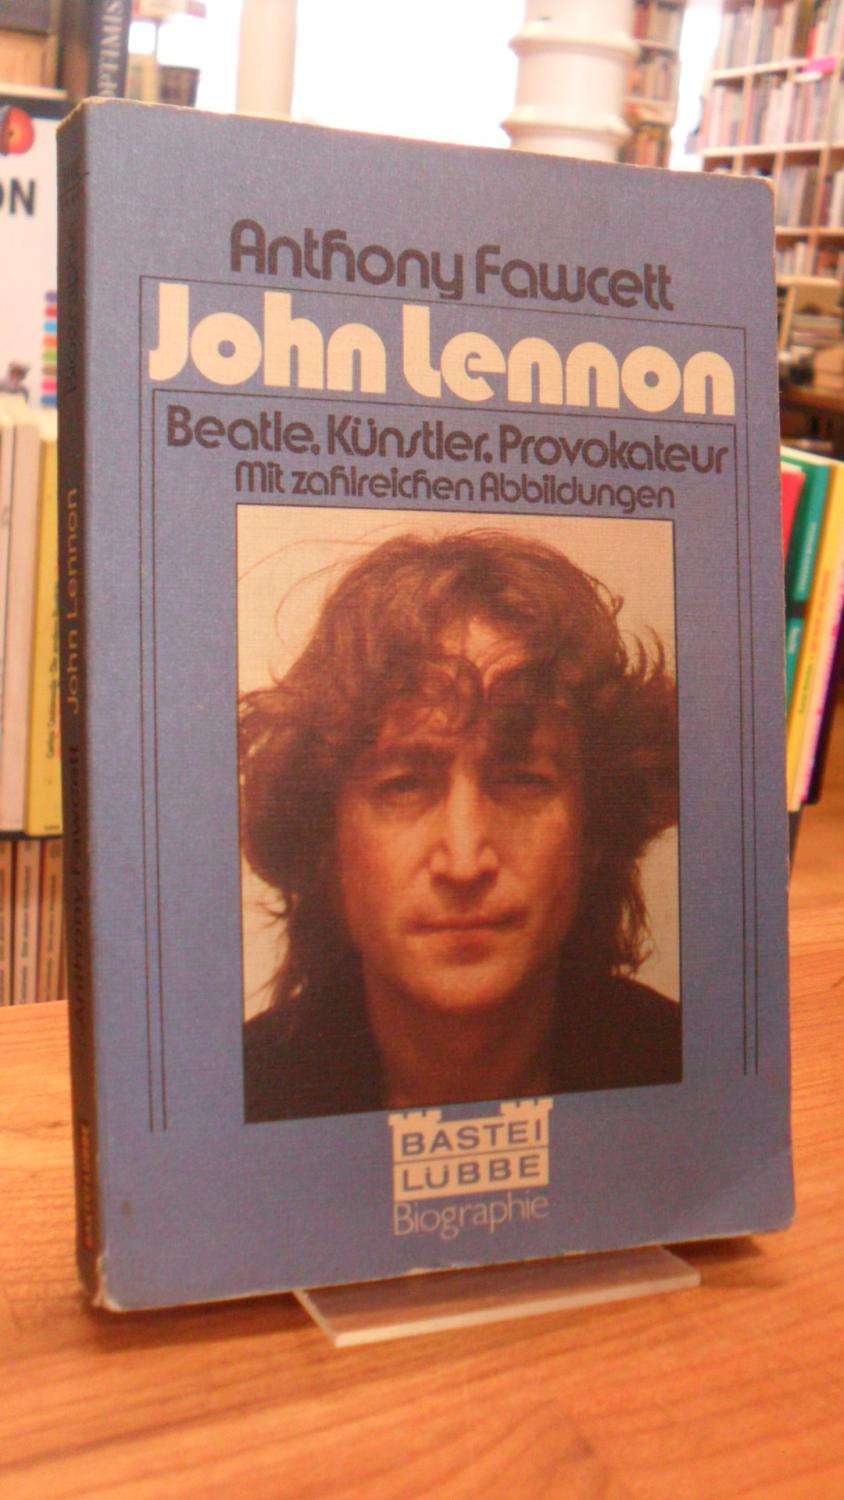 John Lennon - [Beatle, Künstler, Provokateur], - Beatles / Fawcett, Anthony,